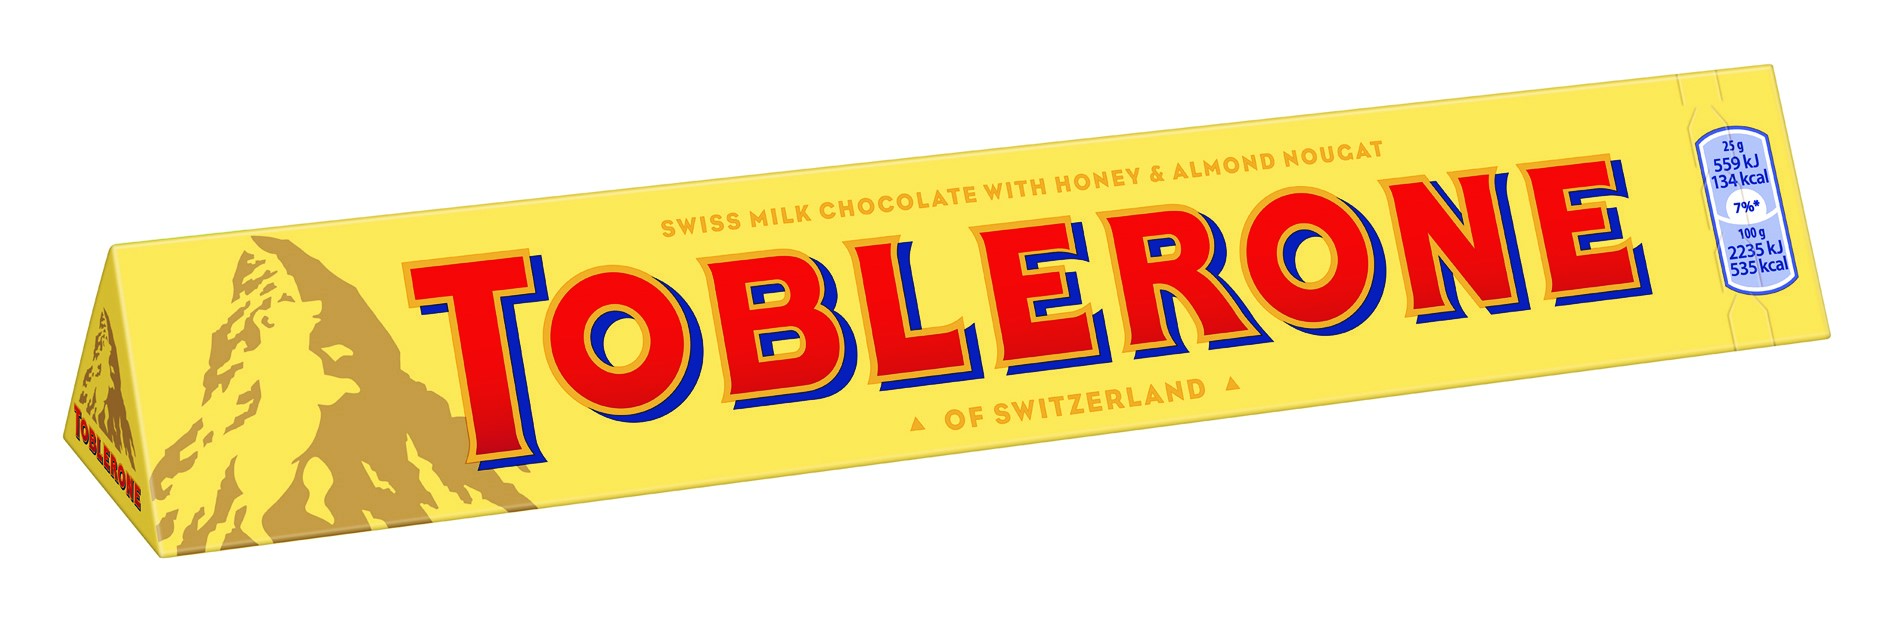 Czekolada Toblerone – słodkie uzupełnienie wielkanocnych spotkań